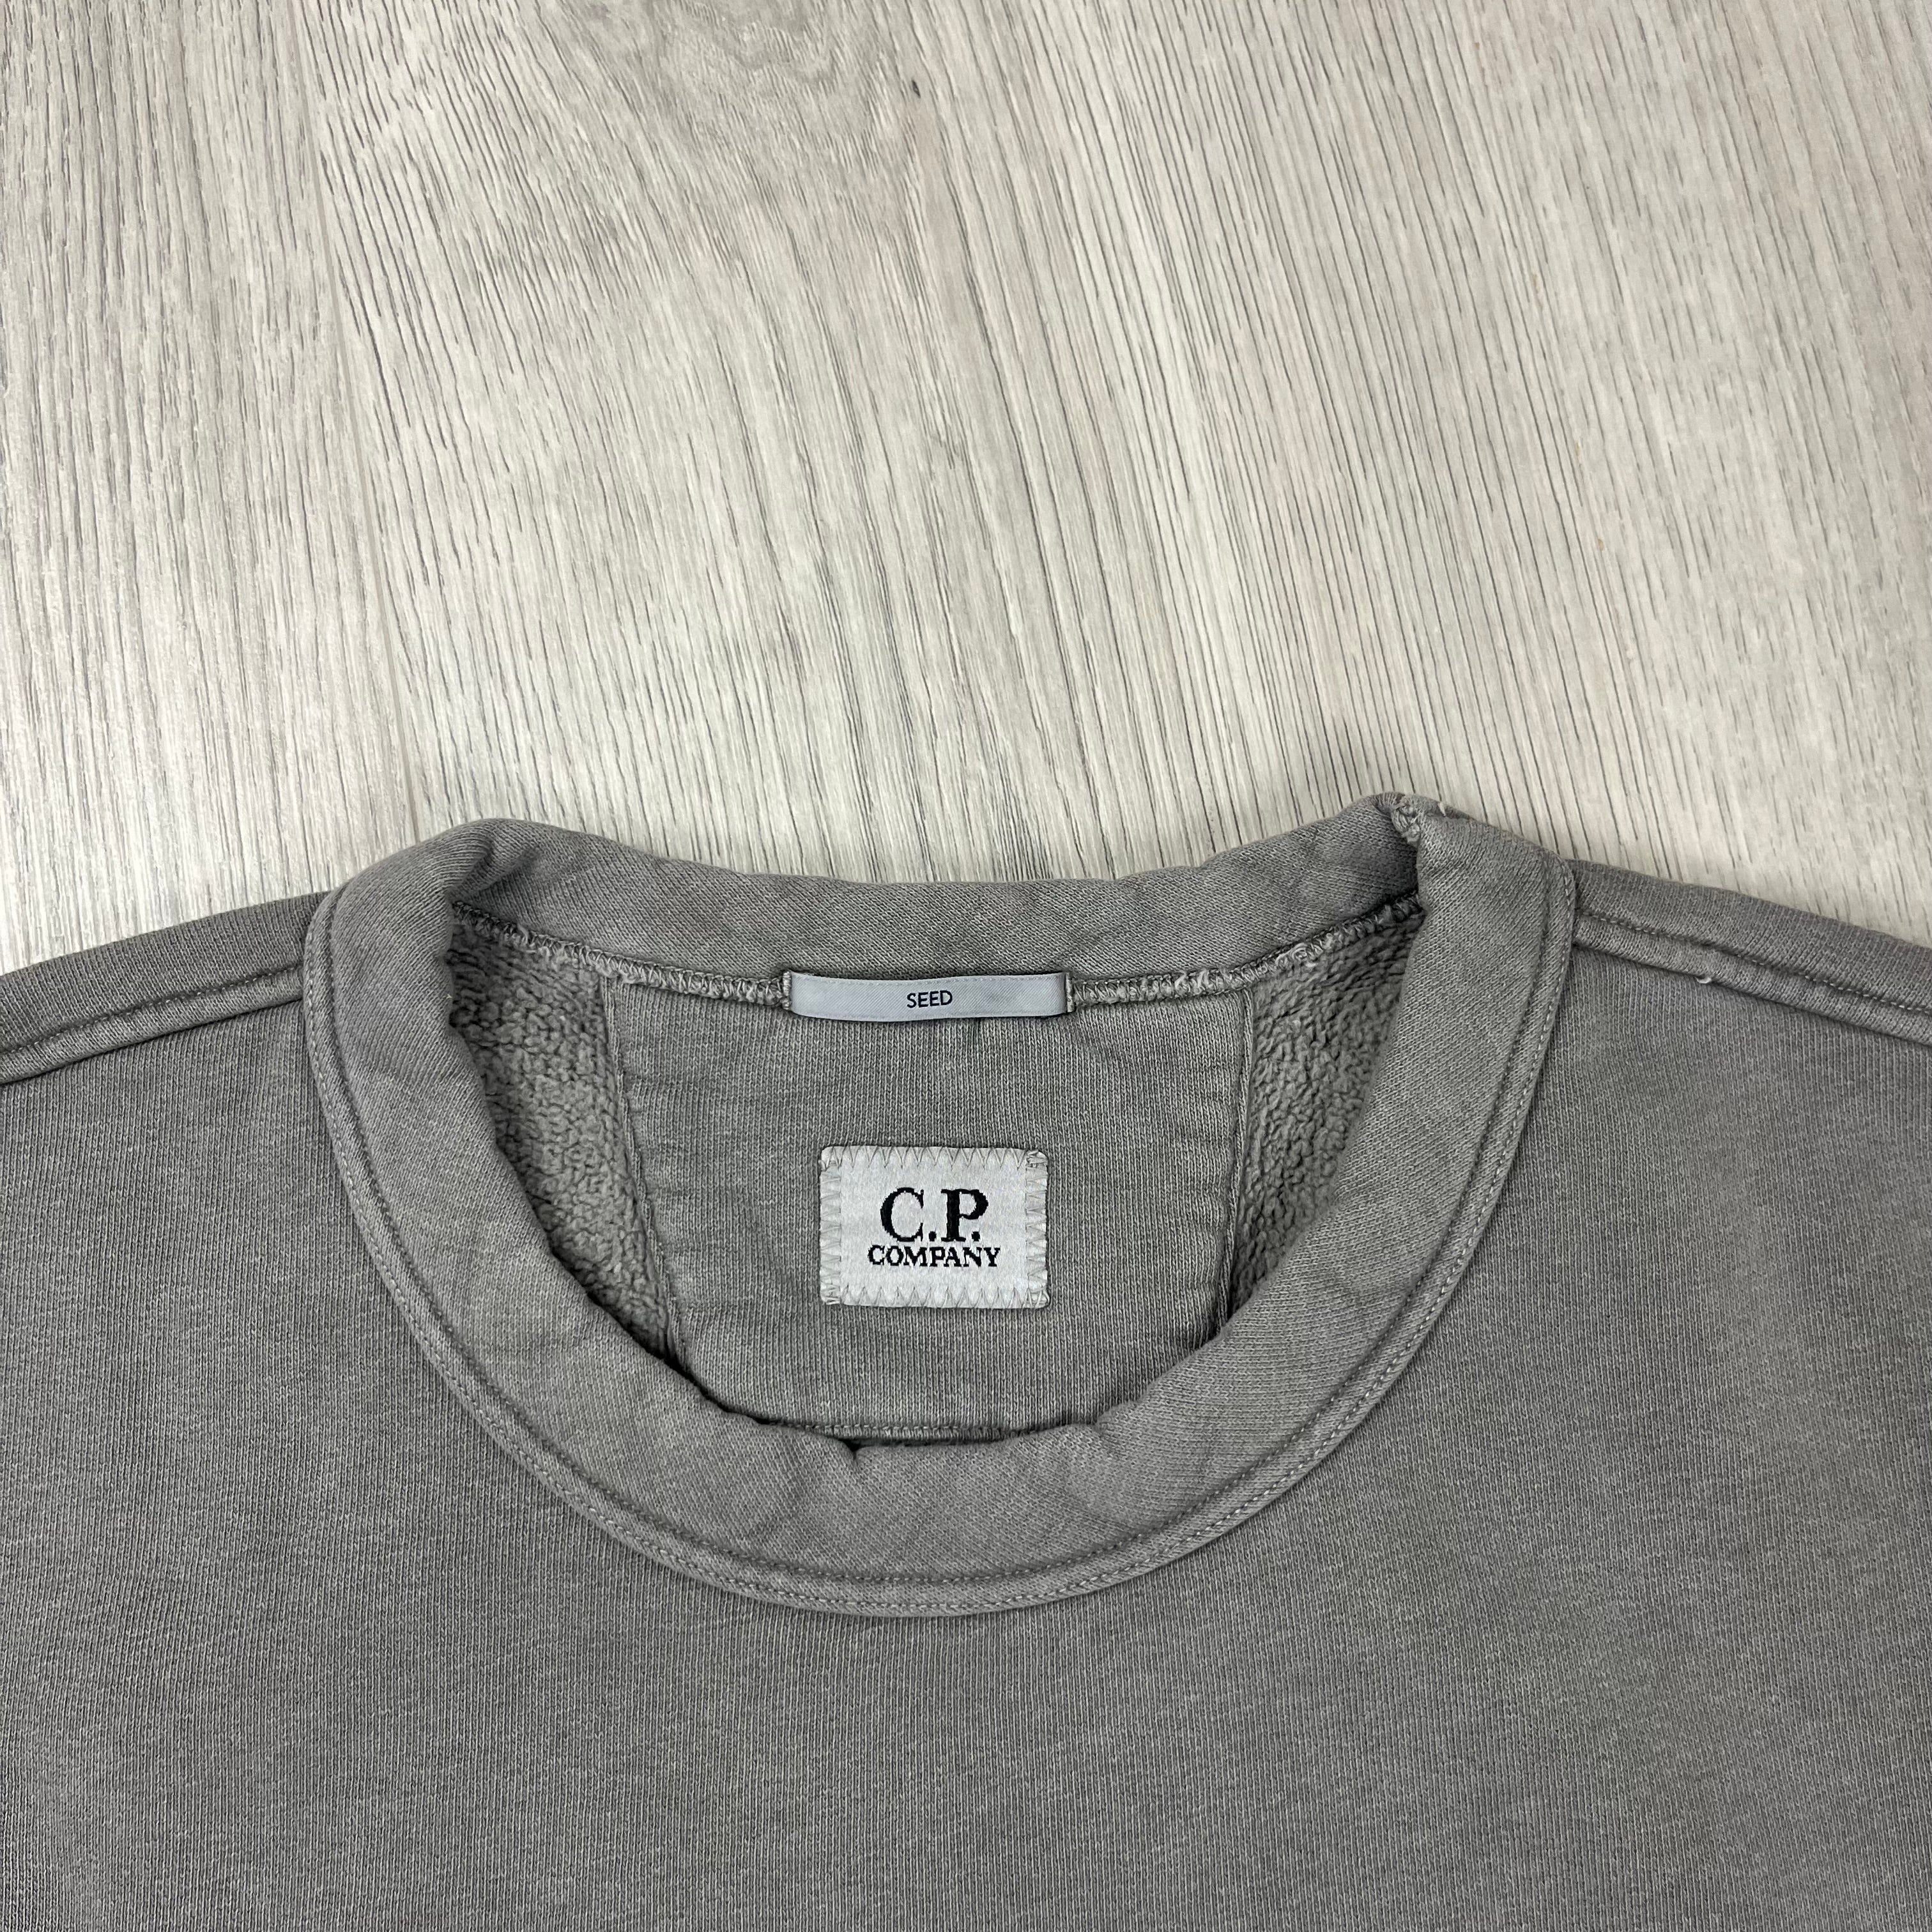 CP Company SEED Sweatshirt